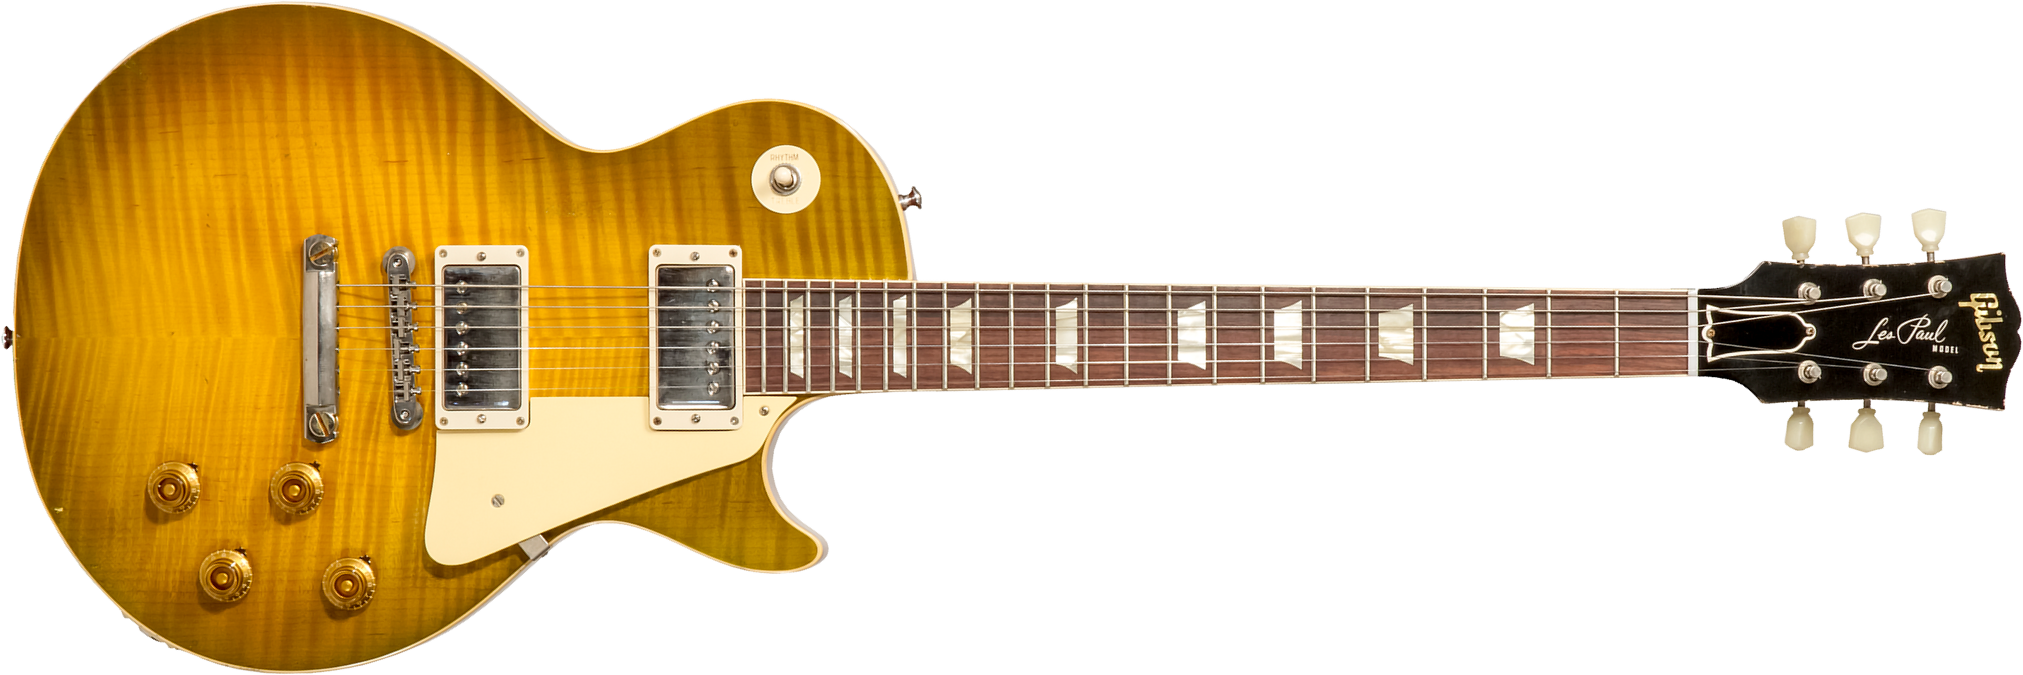 Gibson Custom Shop M2m Les Paul Standard 1959 Reissue 2h Ht Rw #932154 - Murphy Lab Light Aged Green Lemon Burst - Guitare Électrique Single Cut - Mai